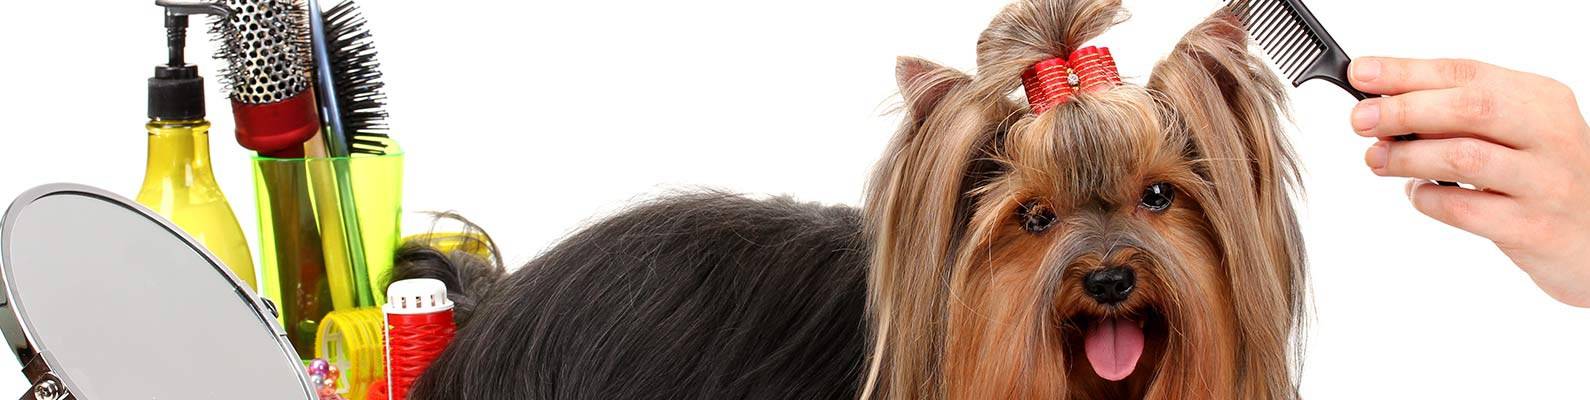 Стрижка собак: зачем она нужна, профессиональный груминг и домашняя стрижка